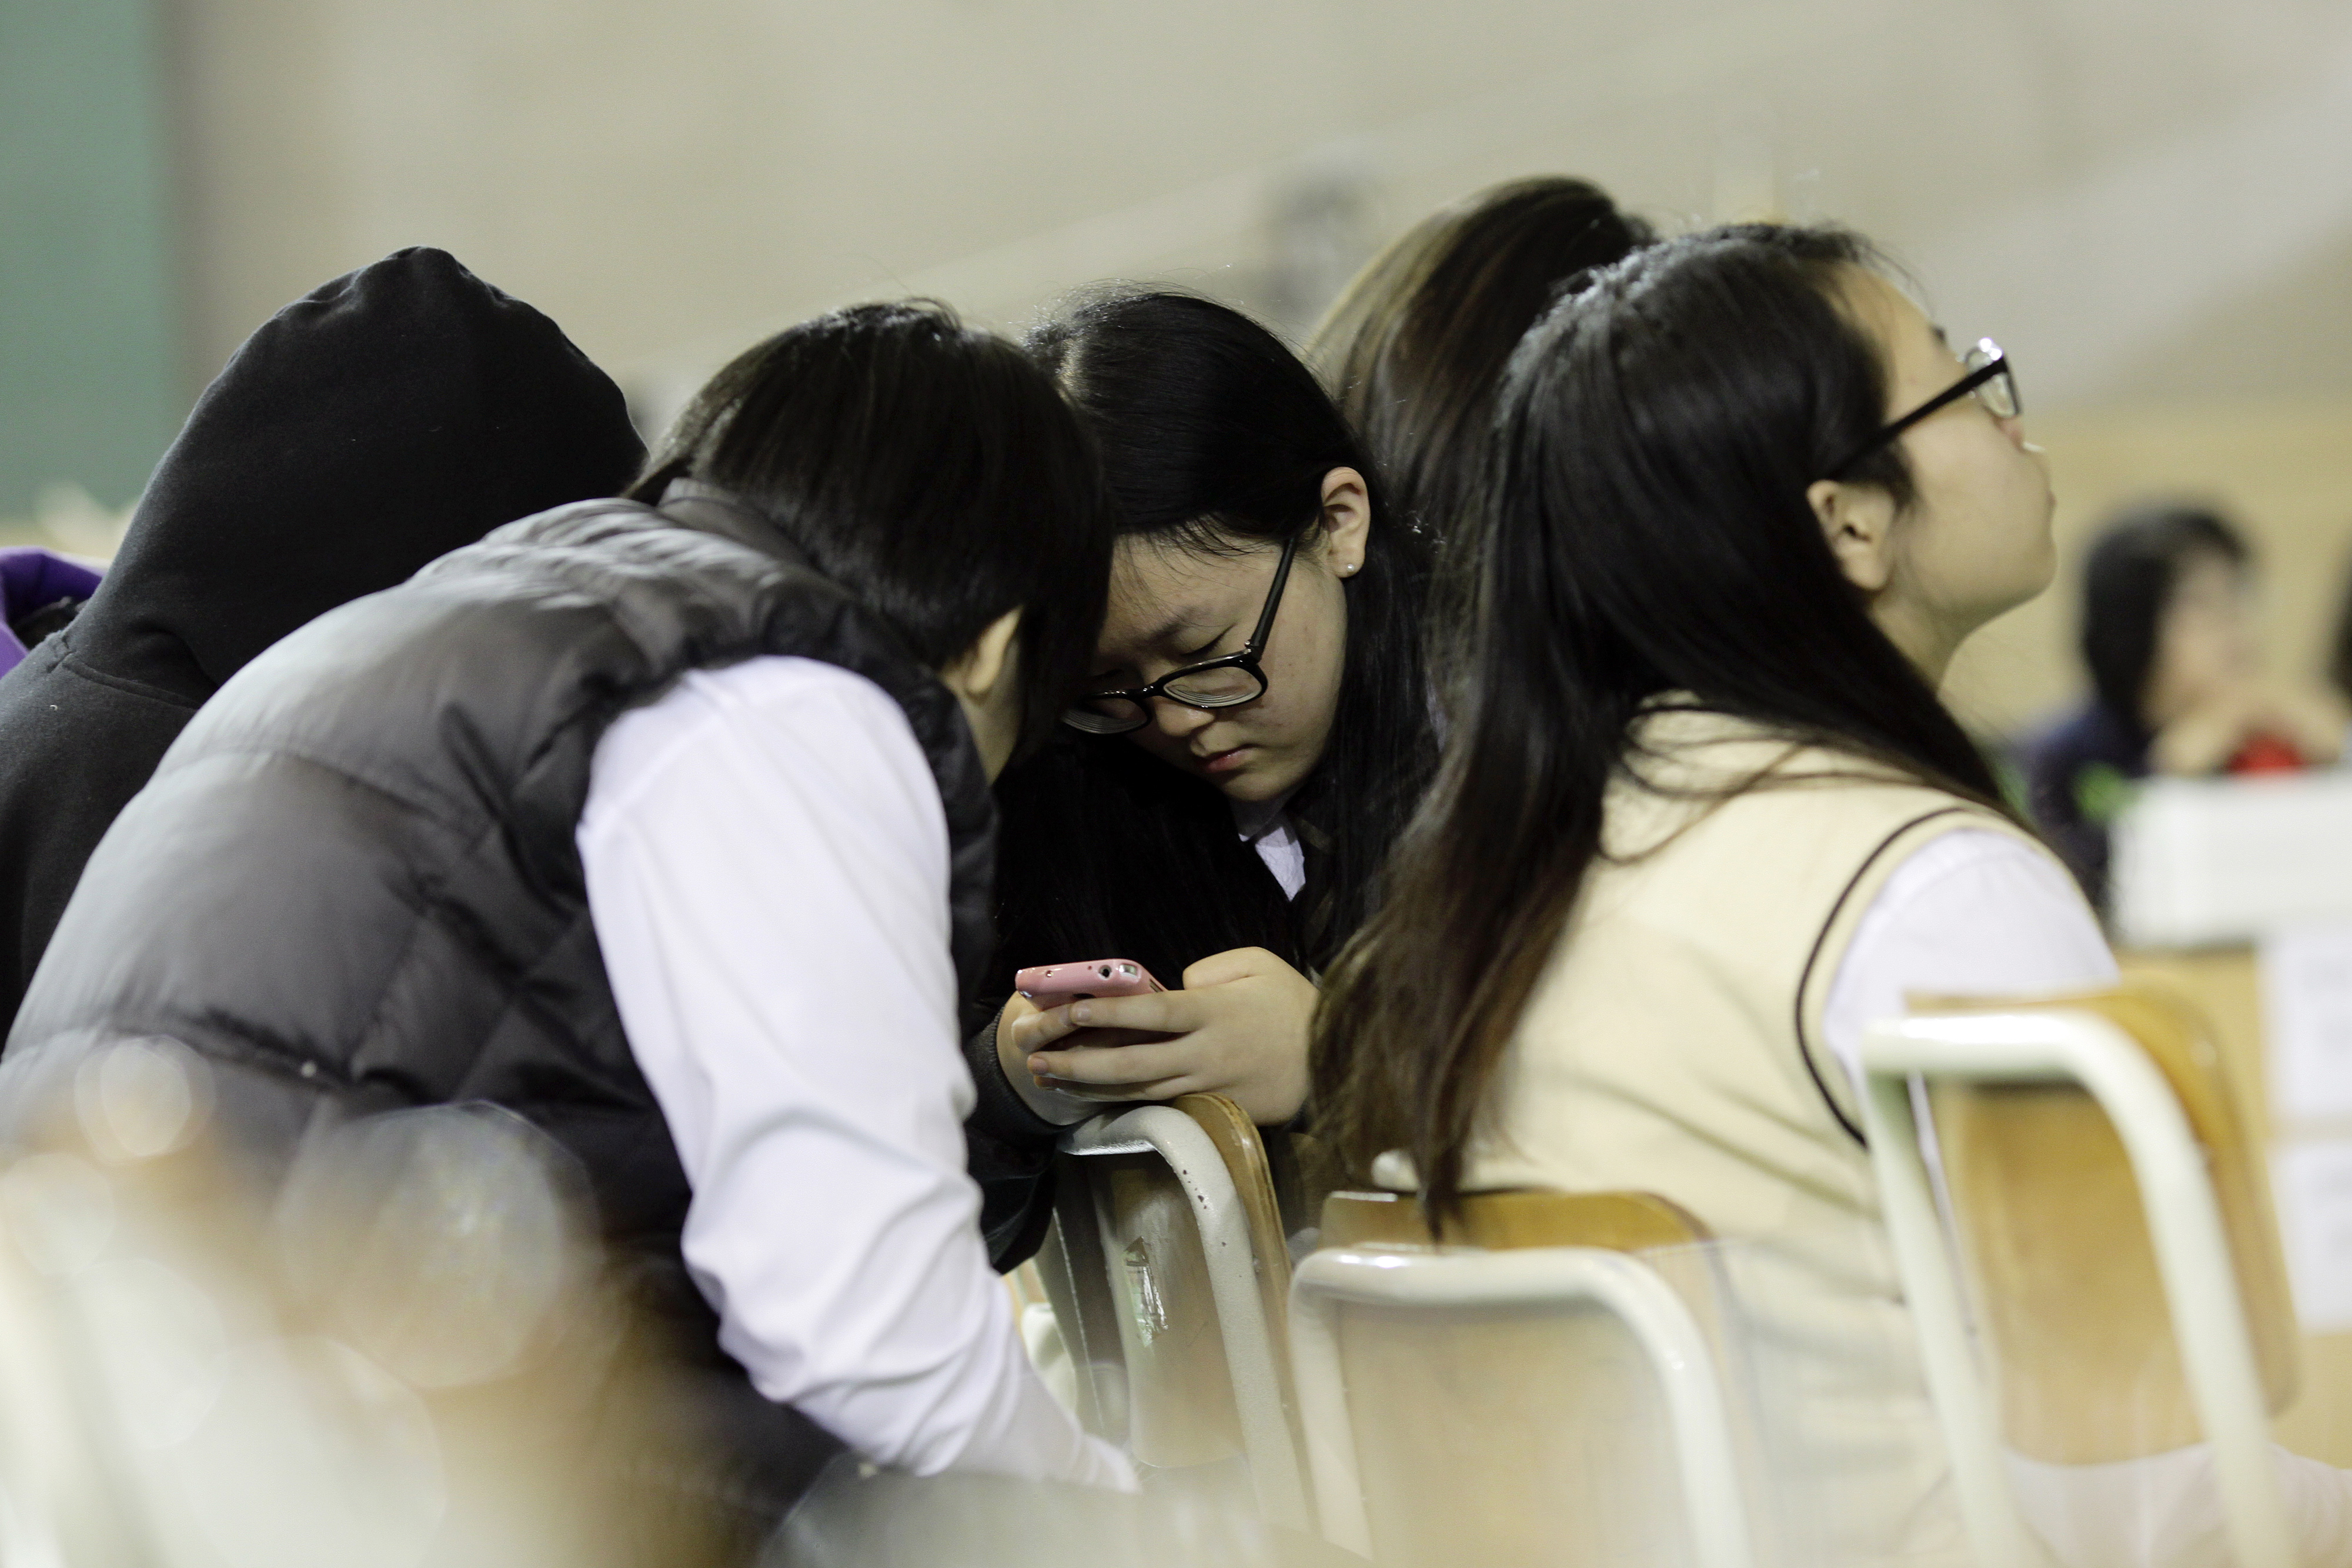 Ν.Κορέα: Ραγίζουν καρδιές τα SMS μαθητών από το πλοίο ενώ βυθιζόταν